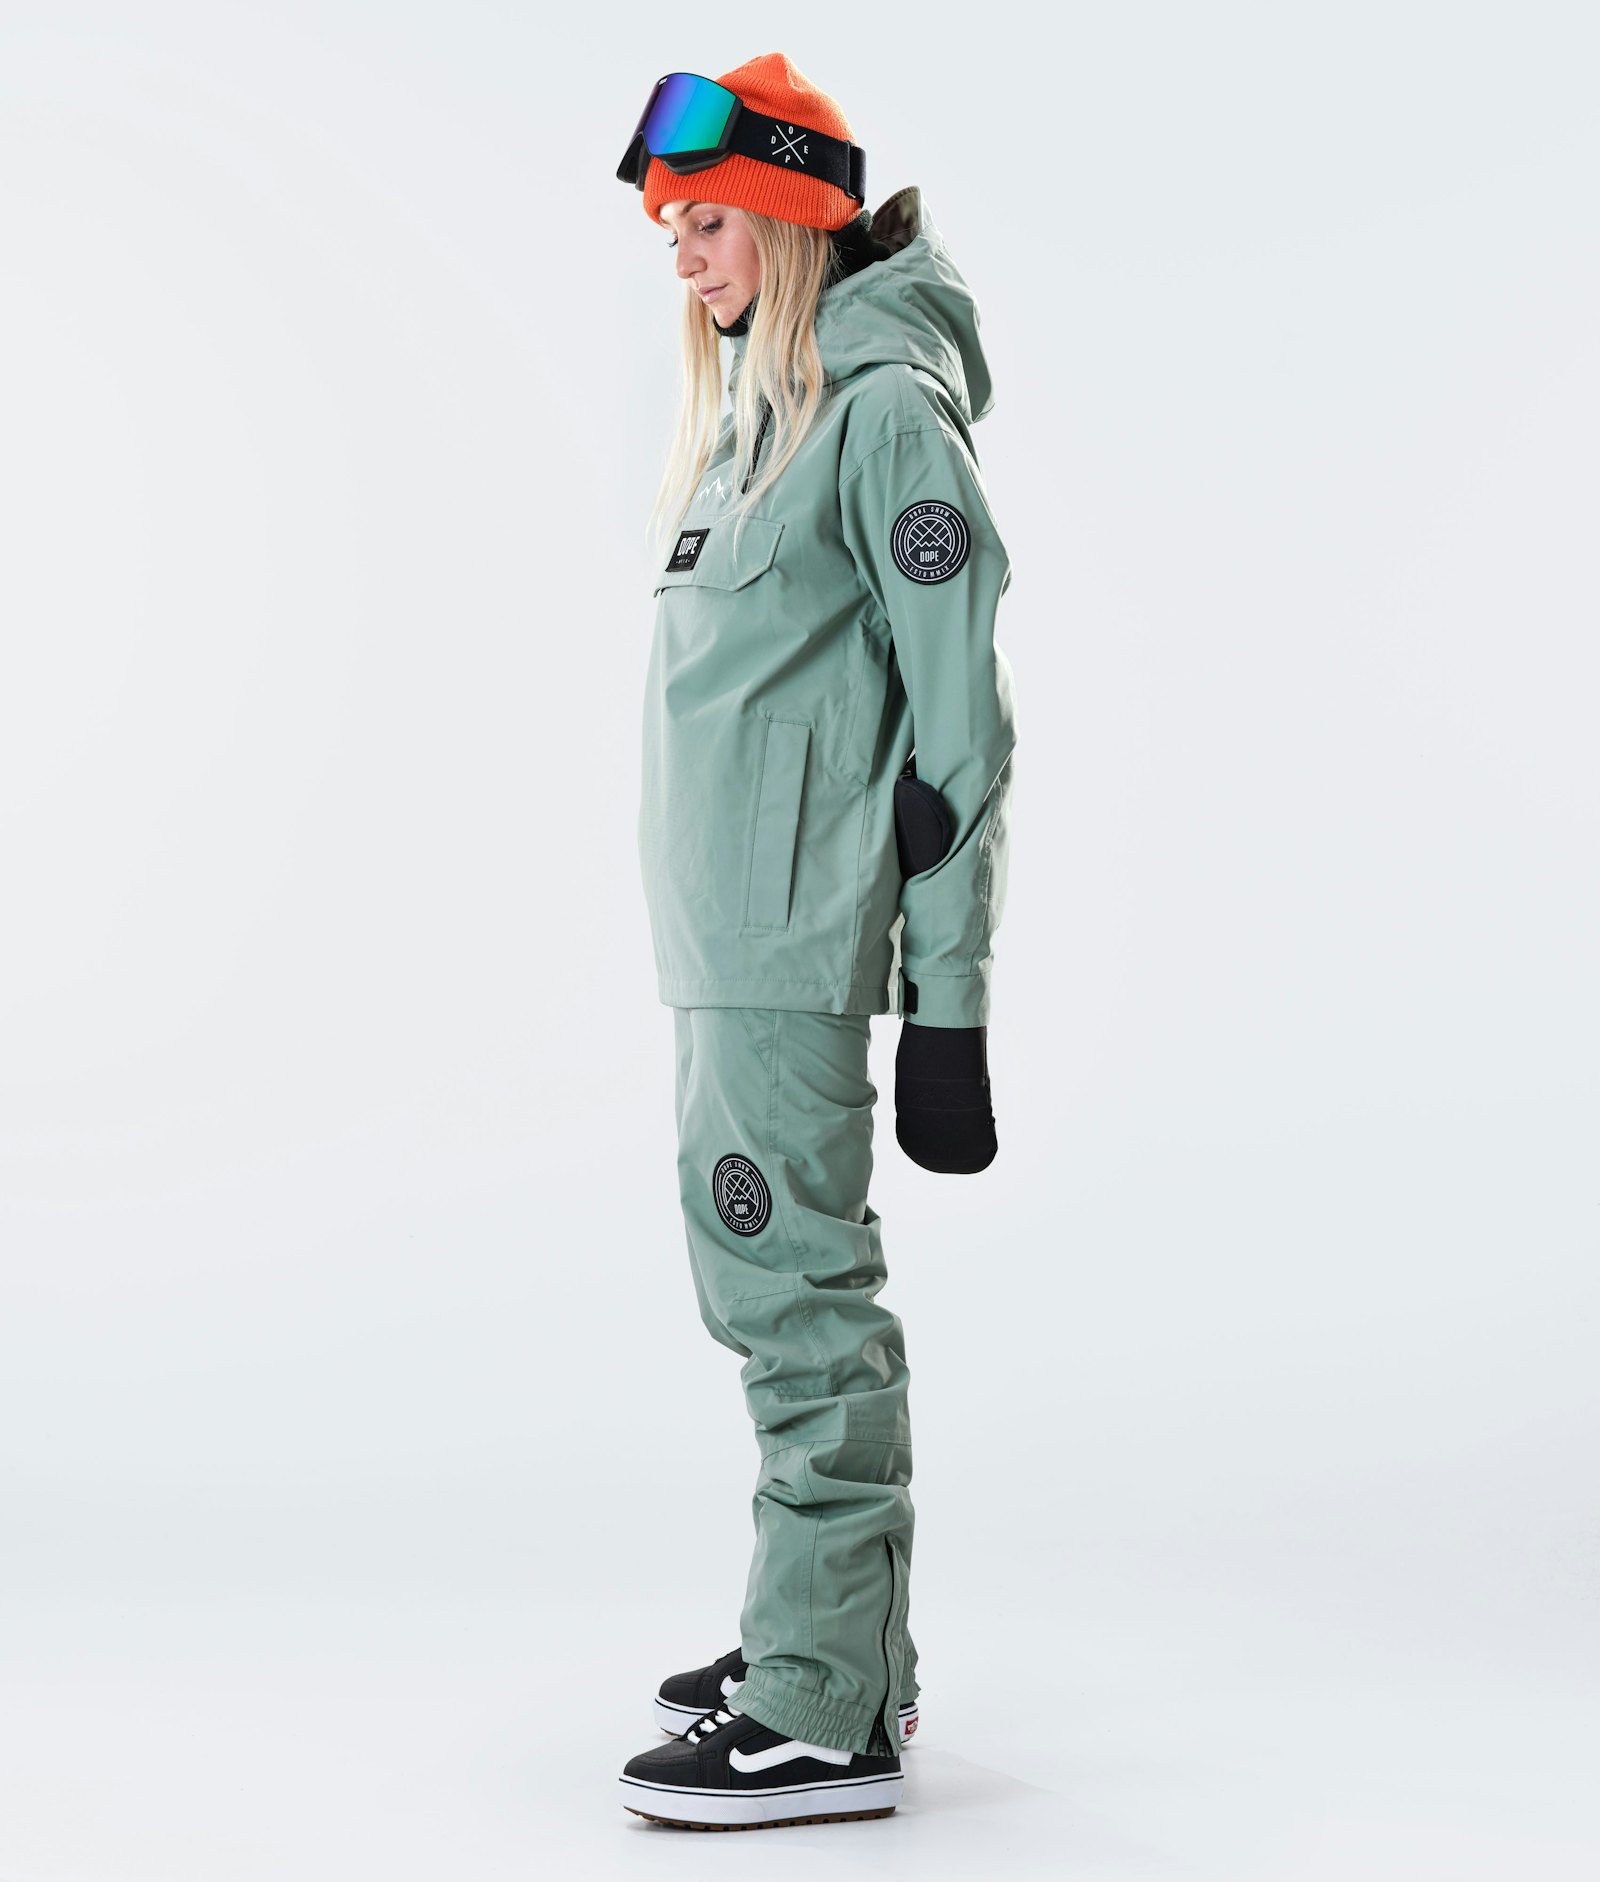 Blizzard W 2020 Snowboard Jacket Women Faded Green